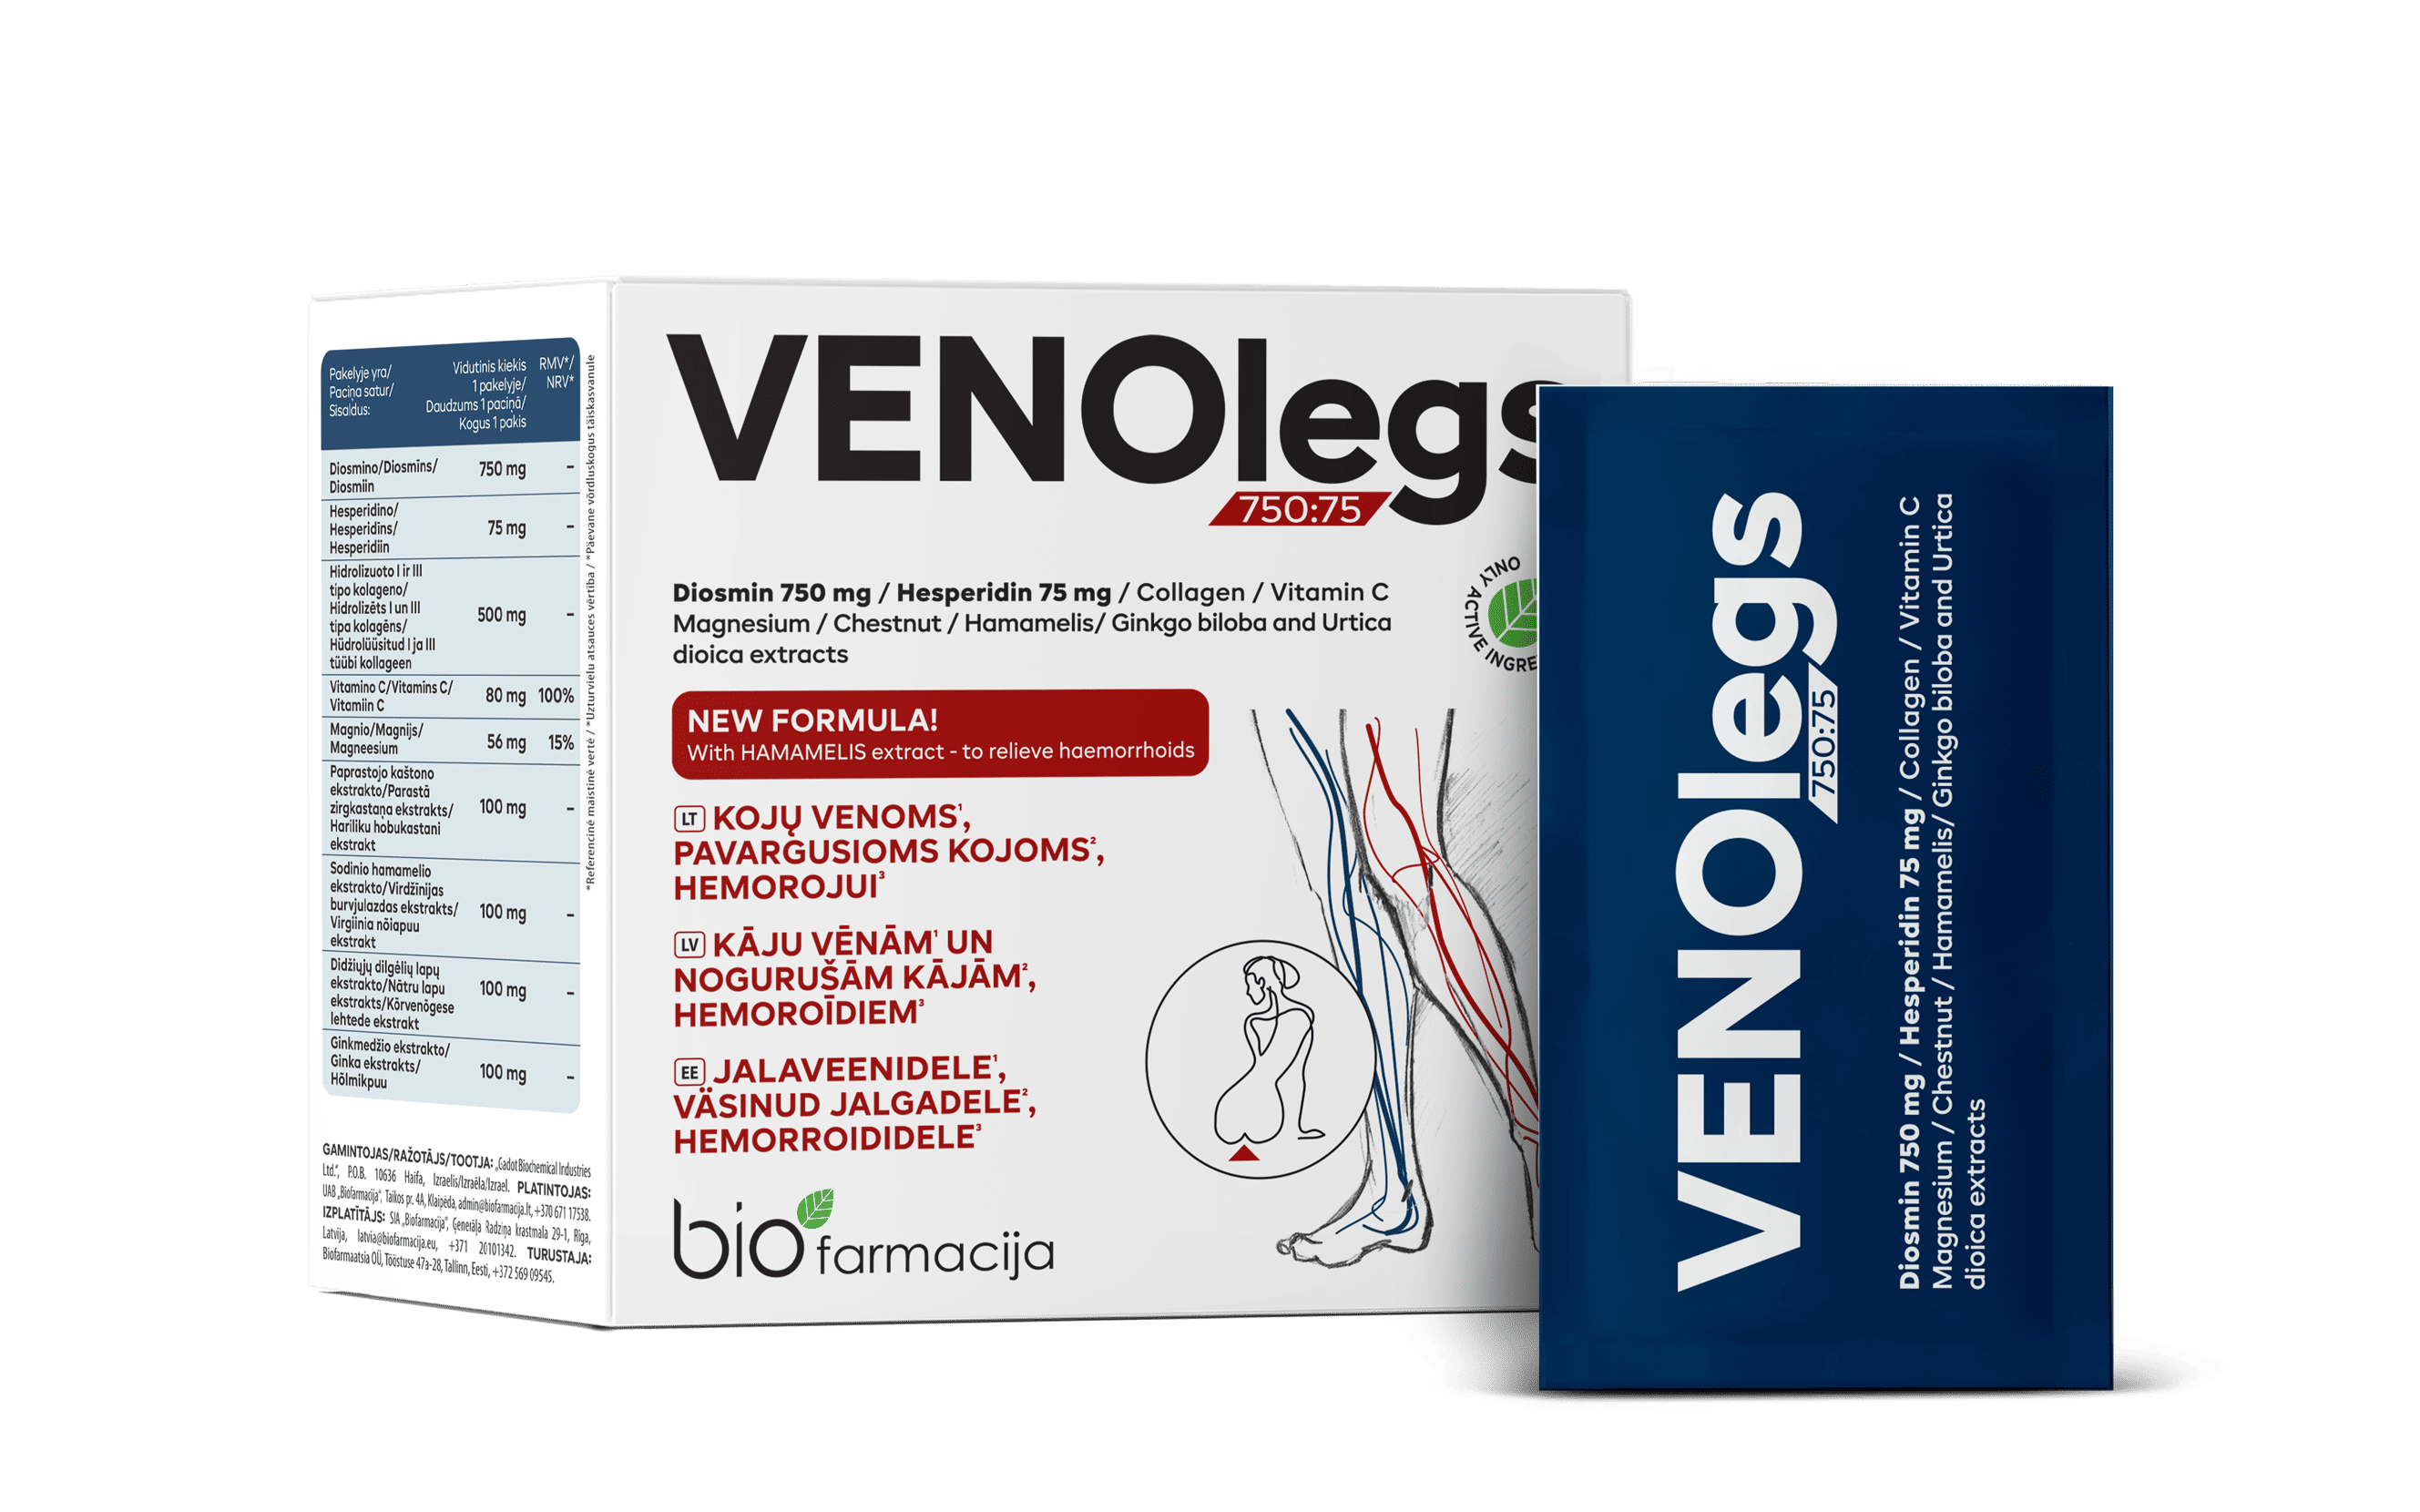 Venolegs - Kõrge flavonoidide sisaldus (750 mg diosmiini ja 75 mg hesperidiini), mineraalained, vitamiinid, hüdrolüüsitud I ja III tüübi kollageen ning 4 taimeekstrakti väsinud jalgadele, jalaveenidele, hemorroididele ja normaalse venoosse mikrotsirkulatsiooni toetuseks.